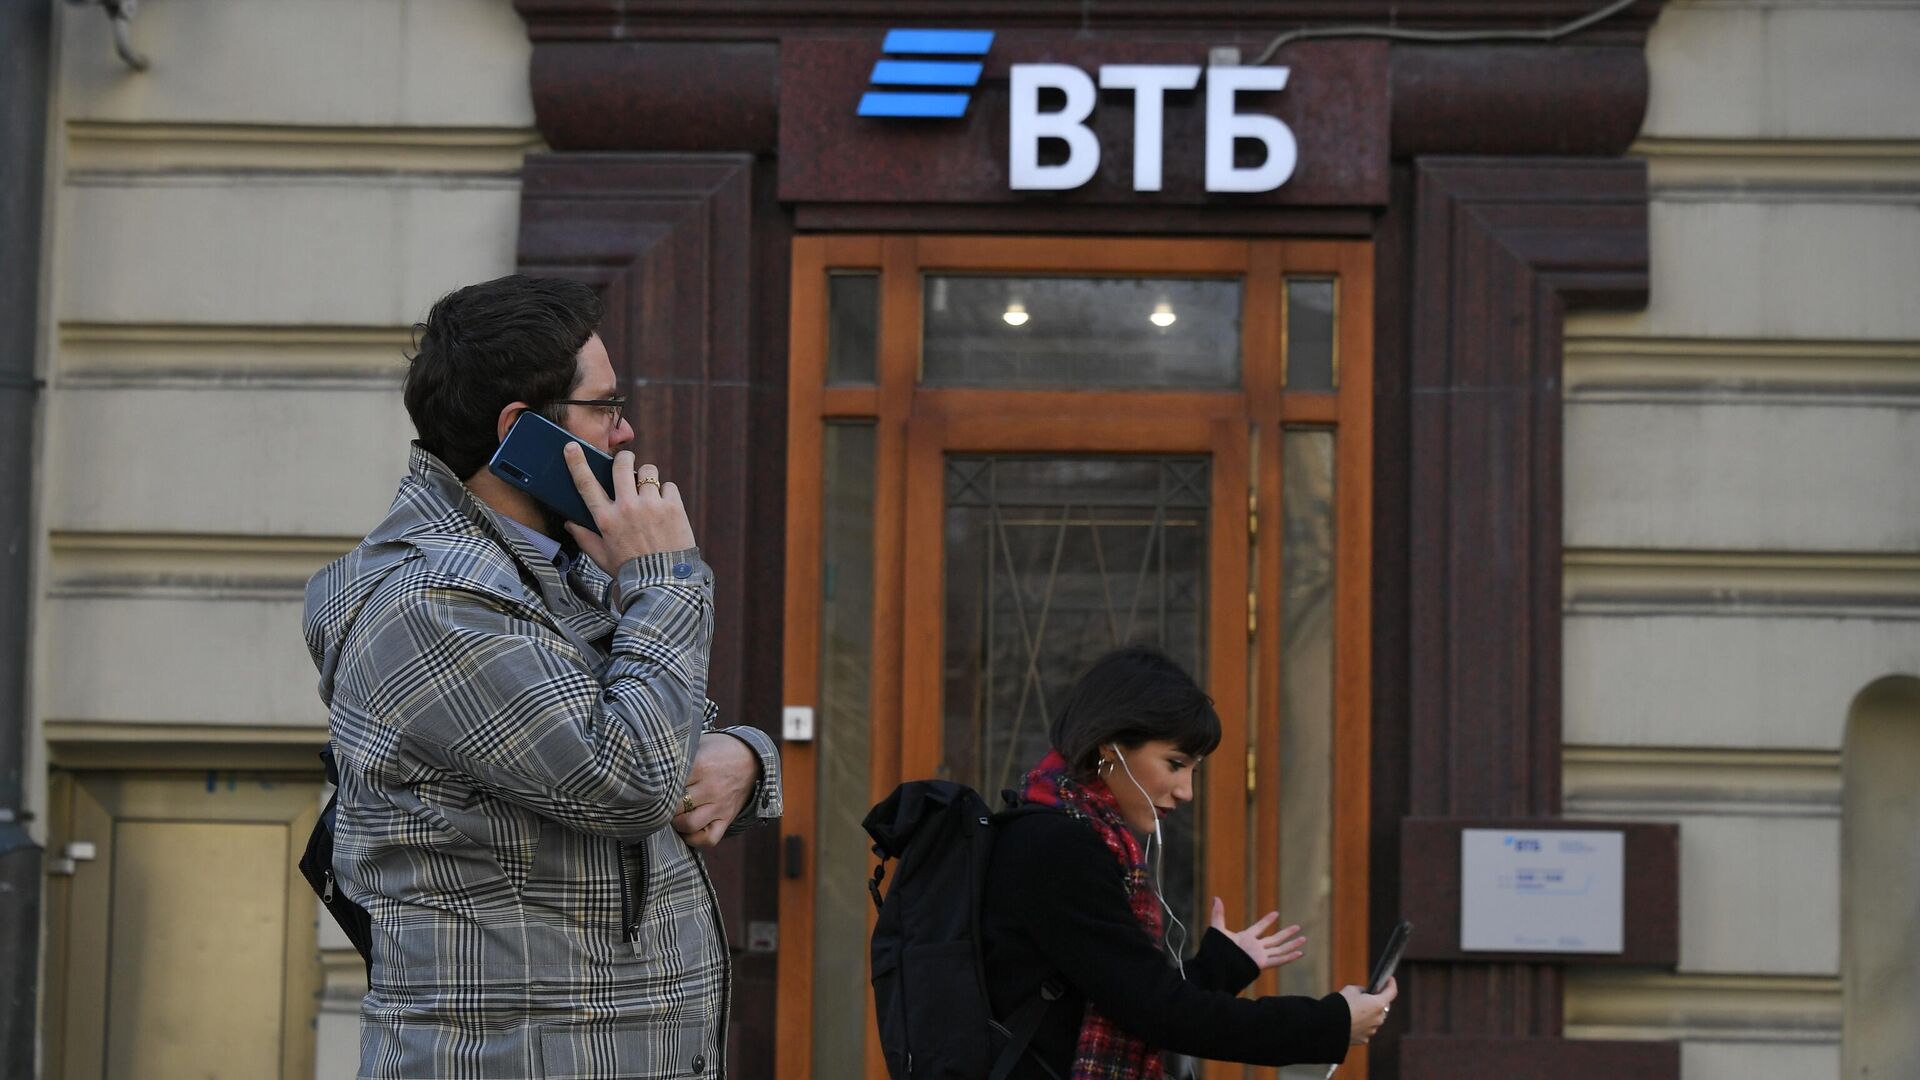 Втб дает деньги. ВТБ санкции. Банки России снаружи. Сотрудники банка ВТБ. Фото перед банком.